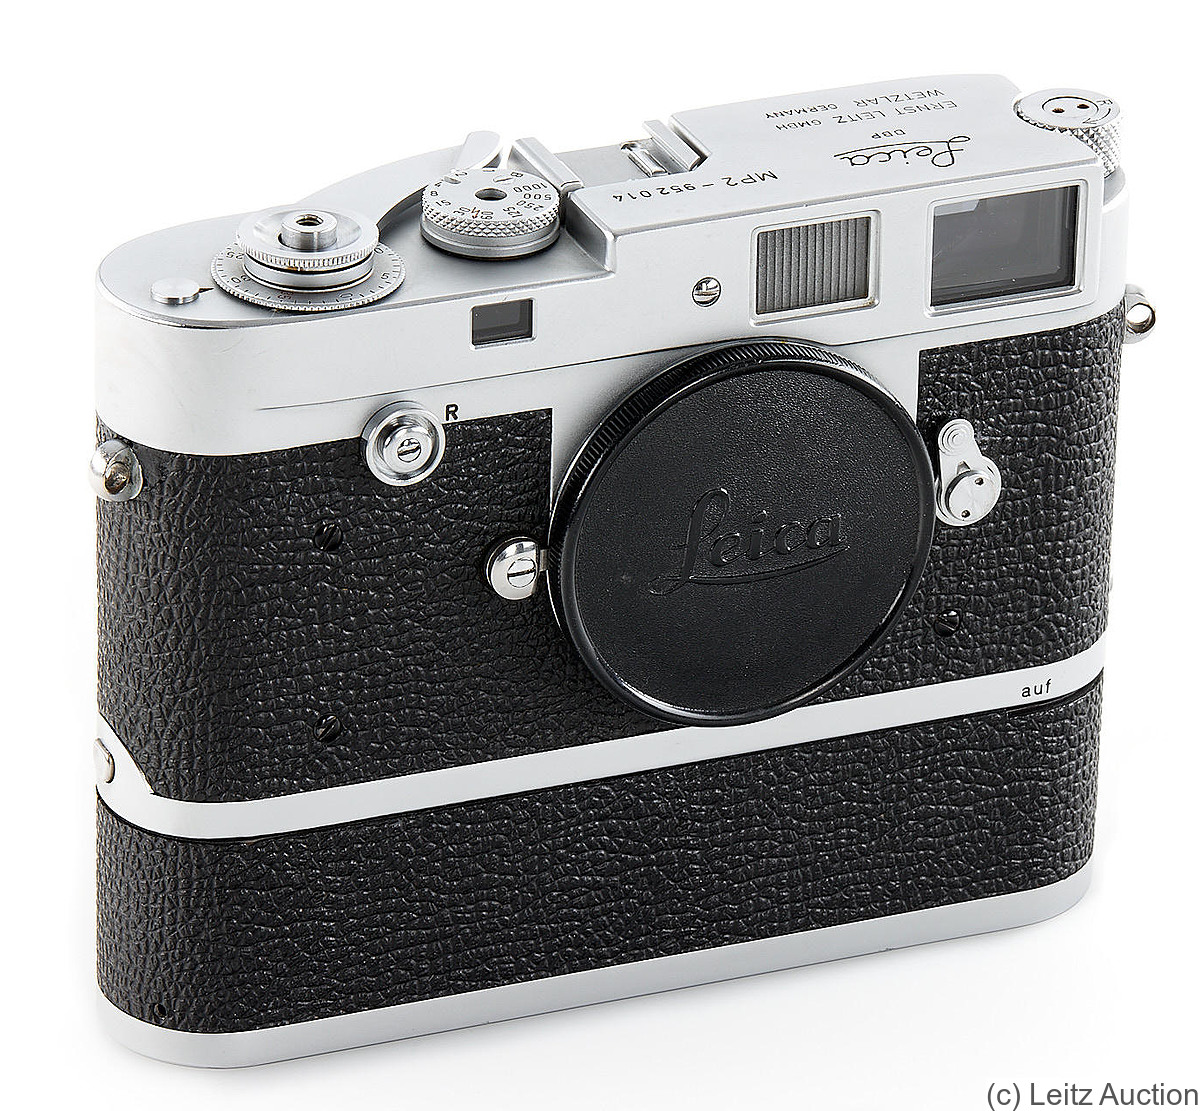 Leitz: Leica MP 2 camera